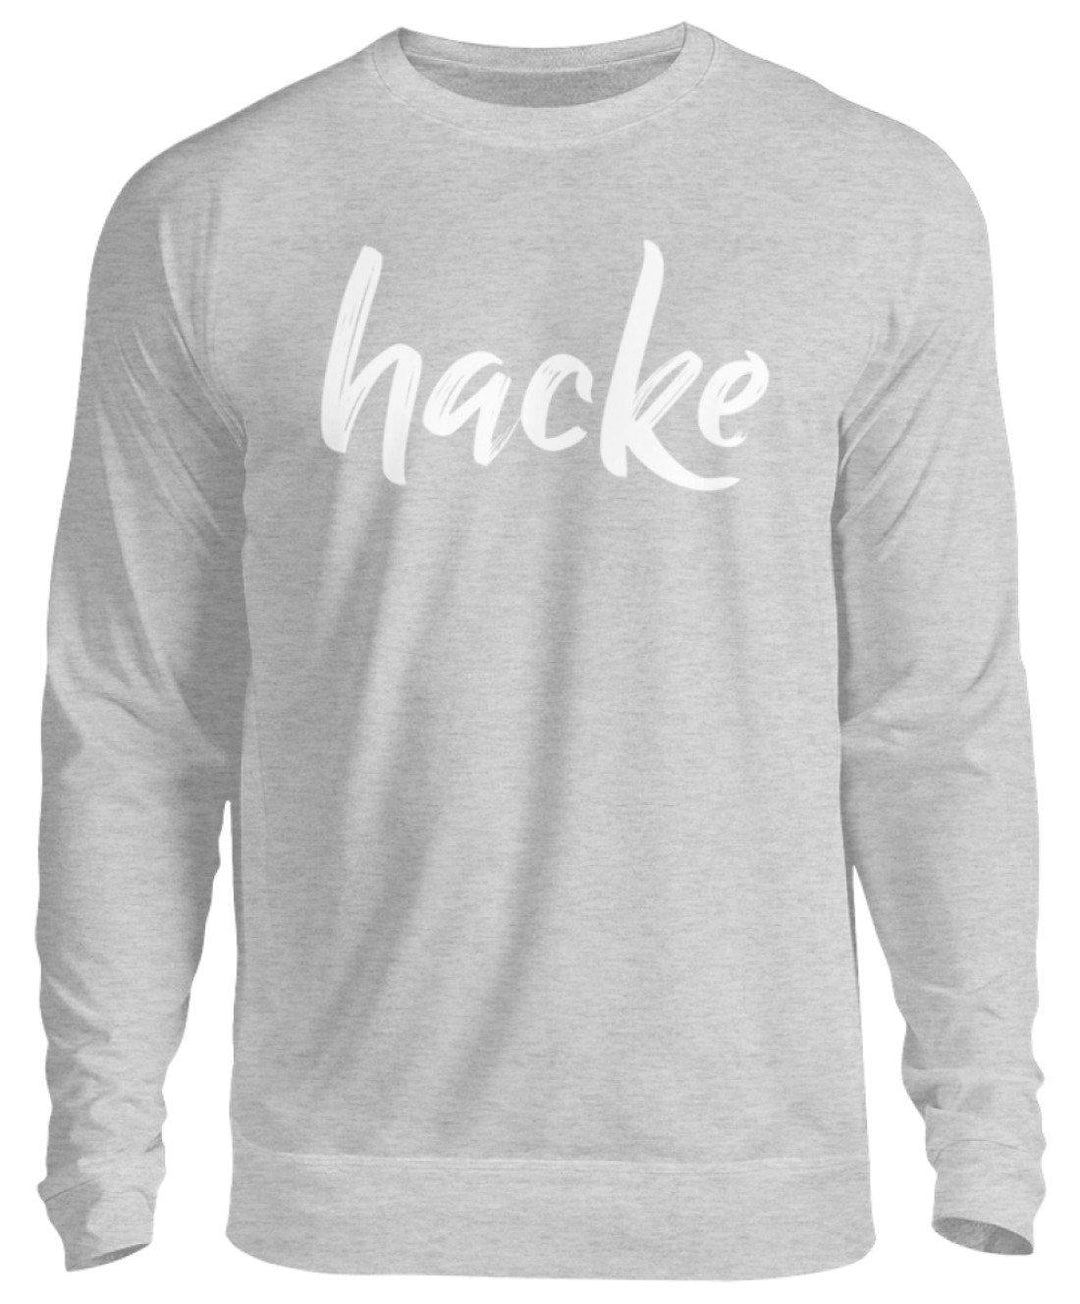 hacke Shirt  - Unisex Pullover - Words on Shirts Sag es mit dem Mittelfinger Shirts Hoodies Sweatshirt Taschen Gymsack Spruch Sprüche Statement